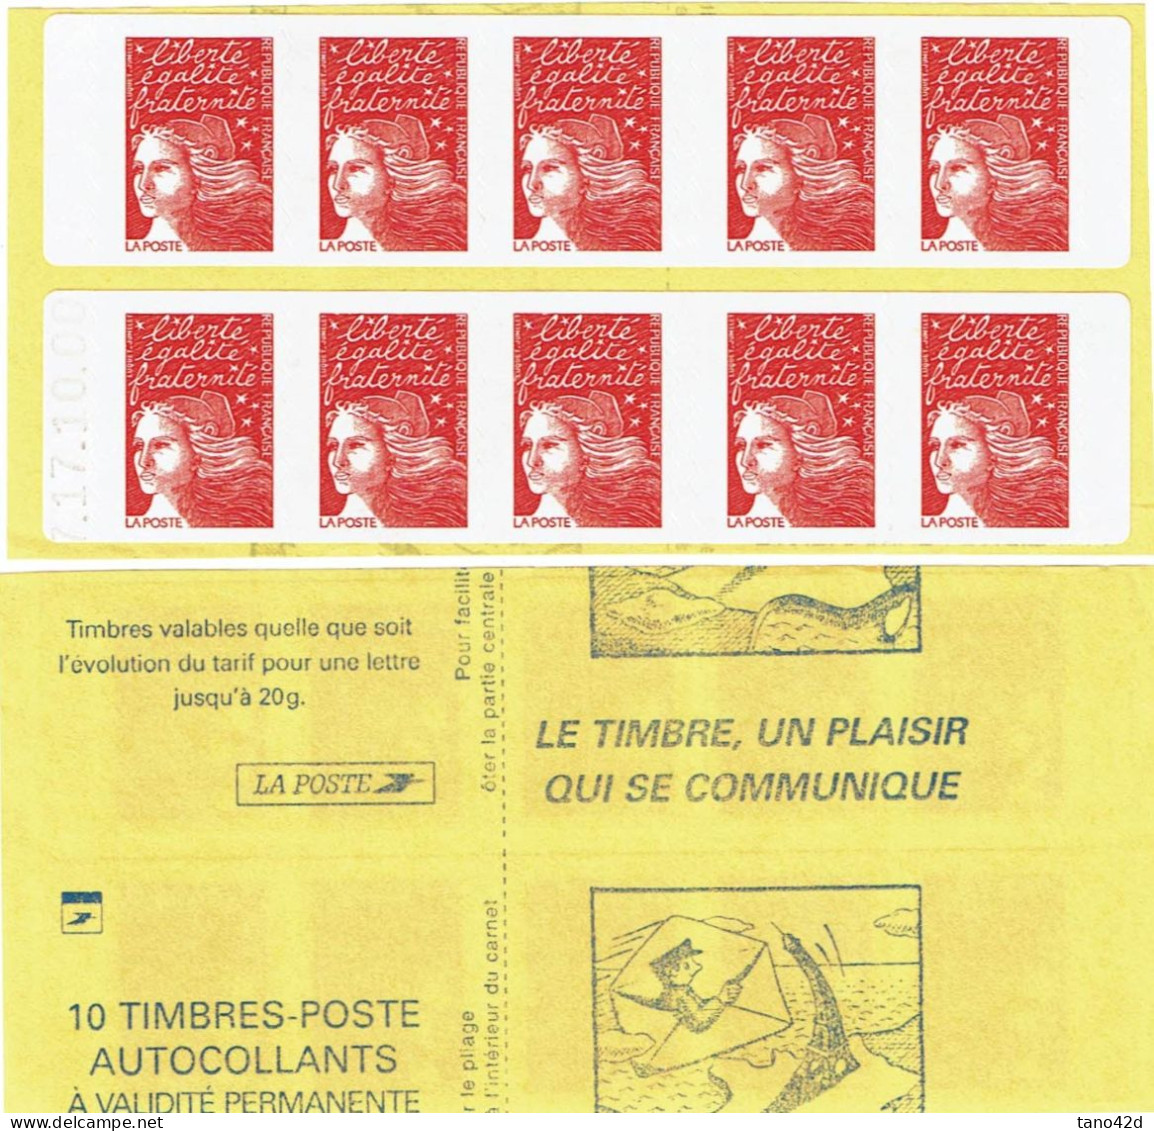 CARNETS DE FRANCE -  CARNET "MARIANNE DE LUQUET"  POUR SAGEM Y/T 3419-12 DATE 17.10.00  VARIETE DE DECOUPE - Modernos : 1959-…